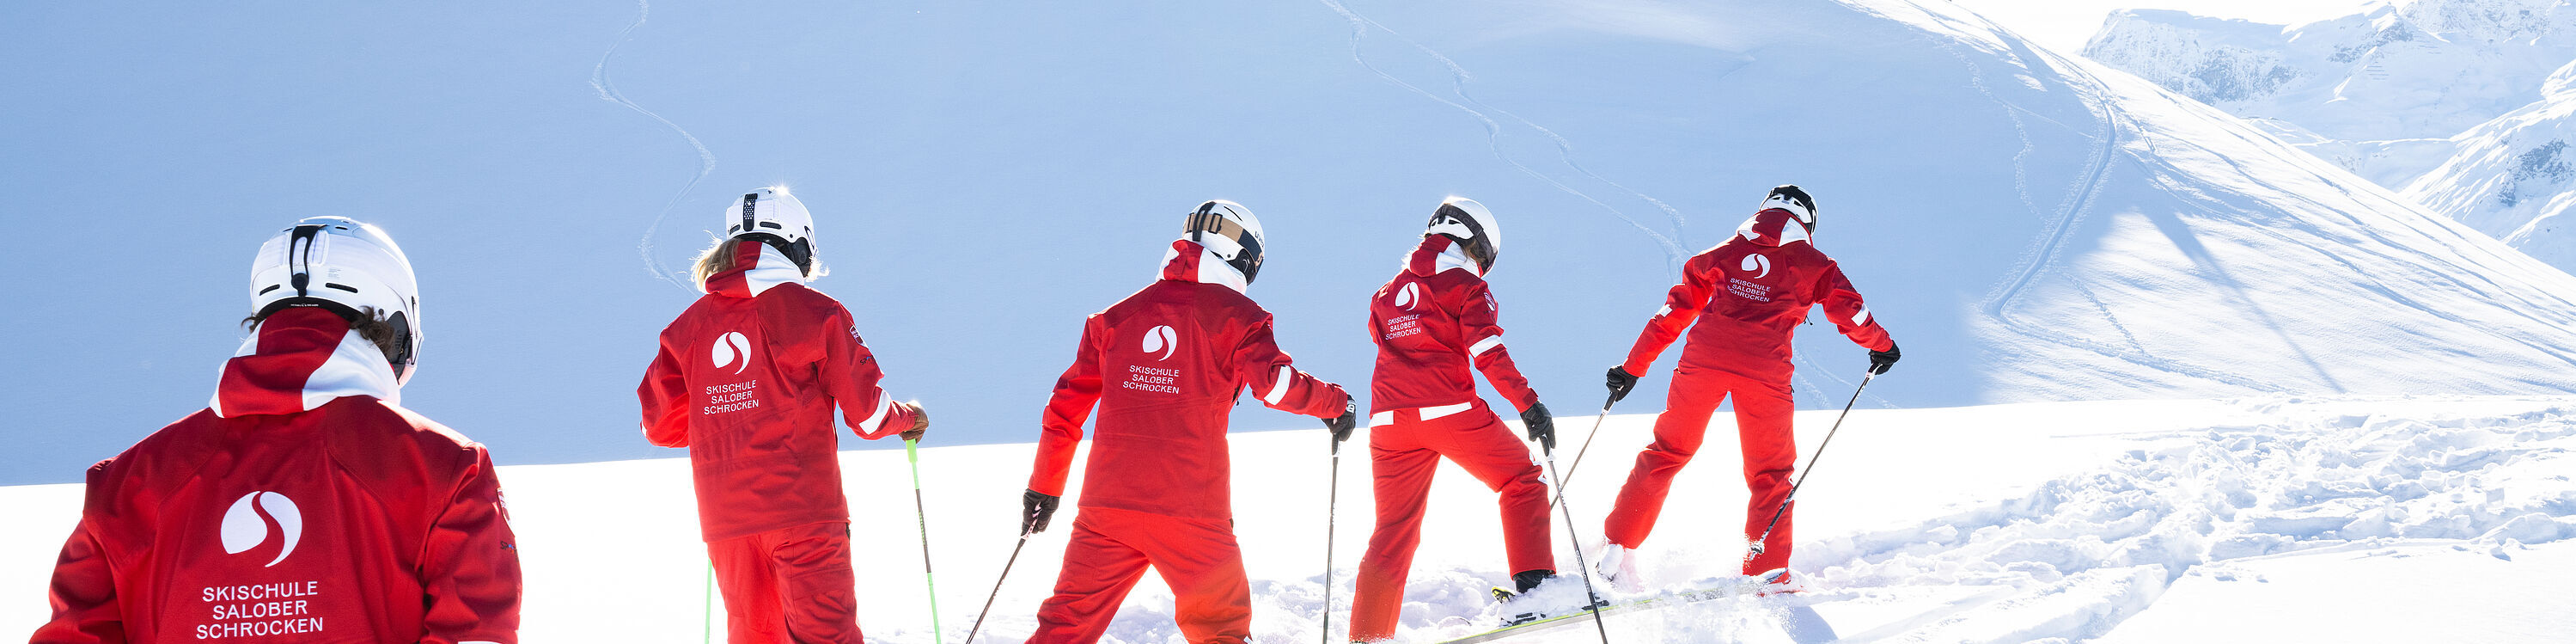 5 Skilehrerinnen und Skilehrer bahnen sich auf Skiern ihren Weg durch den flachen Tiefschnee